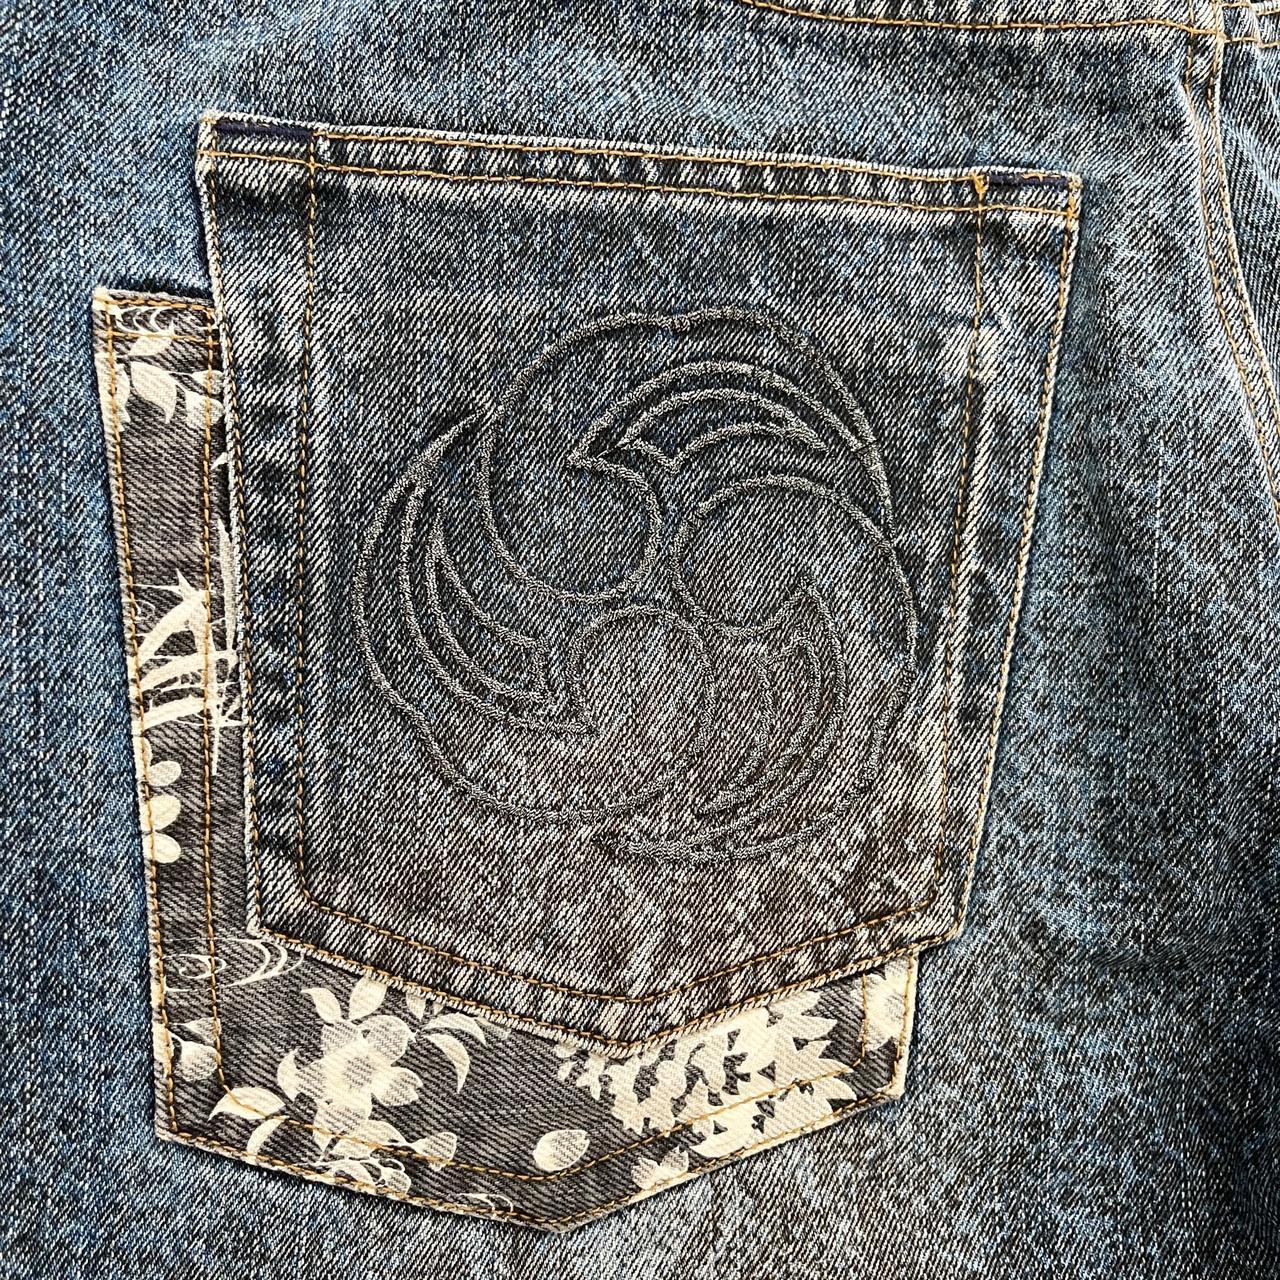 Karakuri Tamashii Jeans